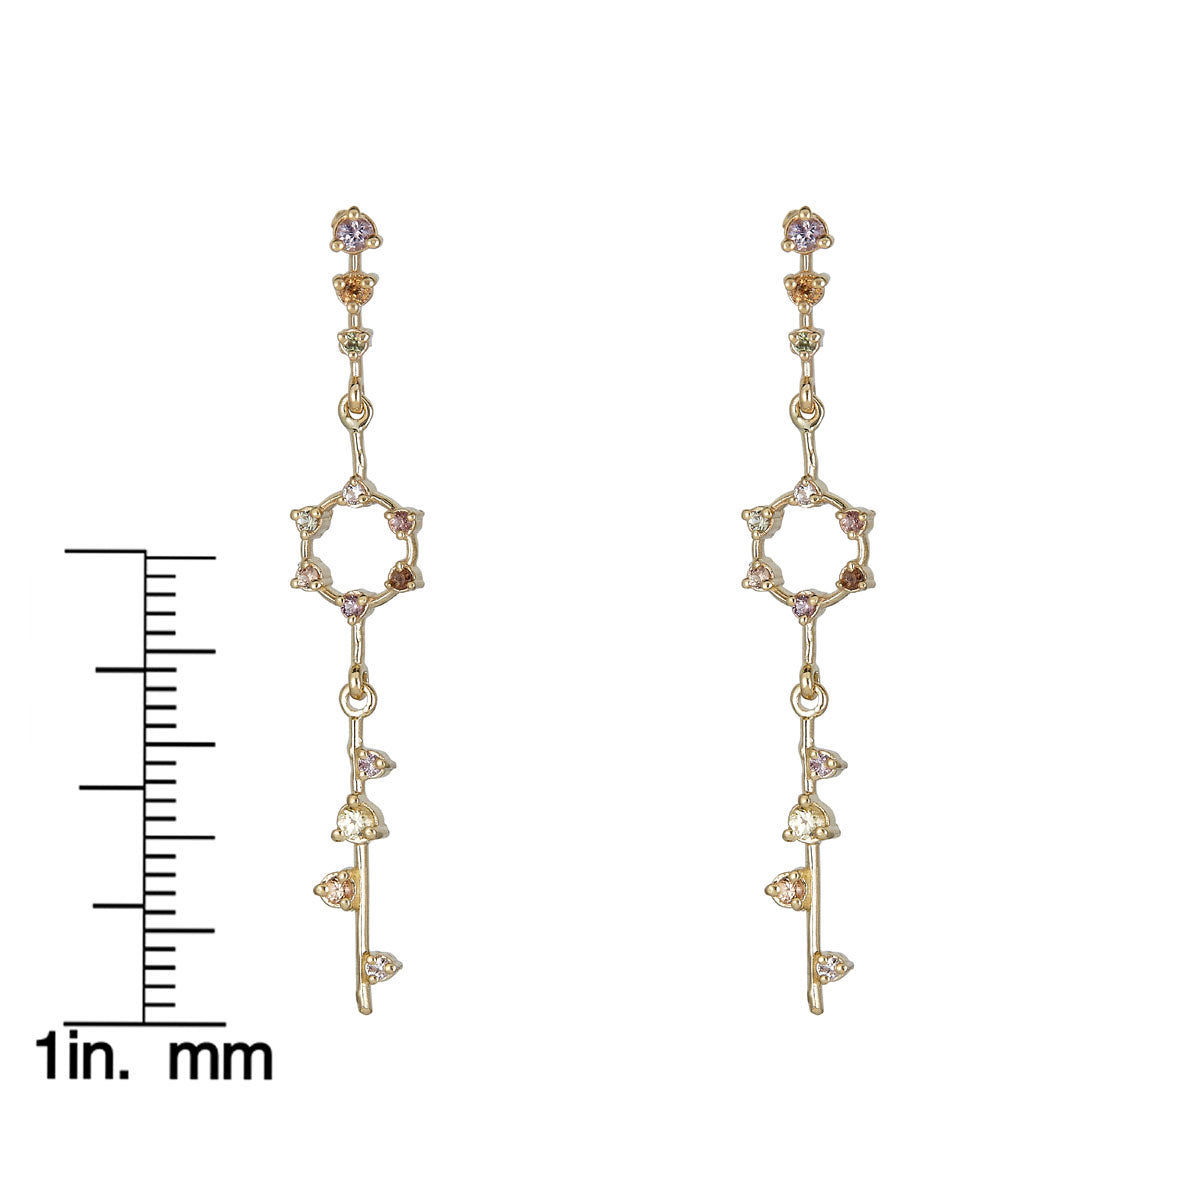 multicolor sapphire star pendulum earrings scale measurement